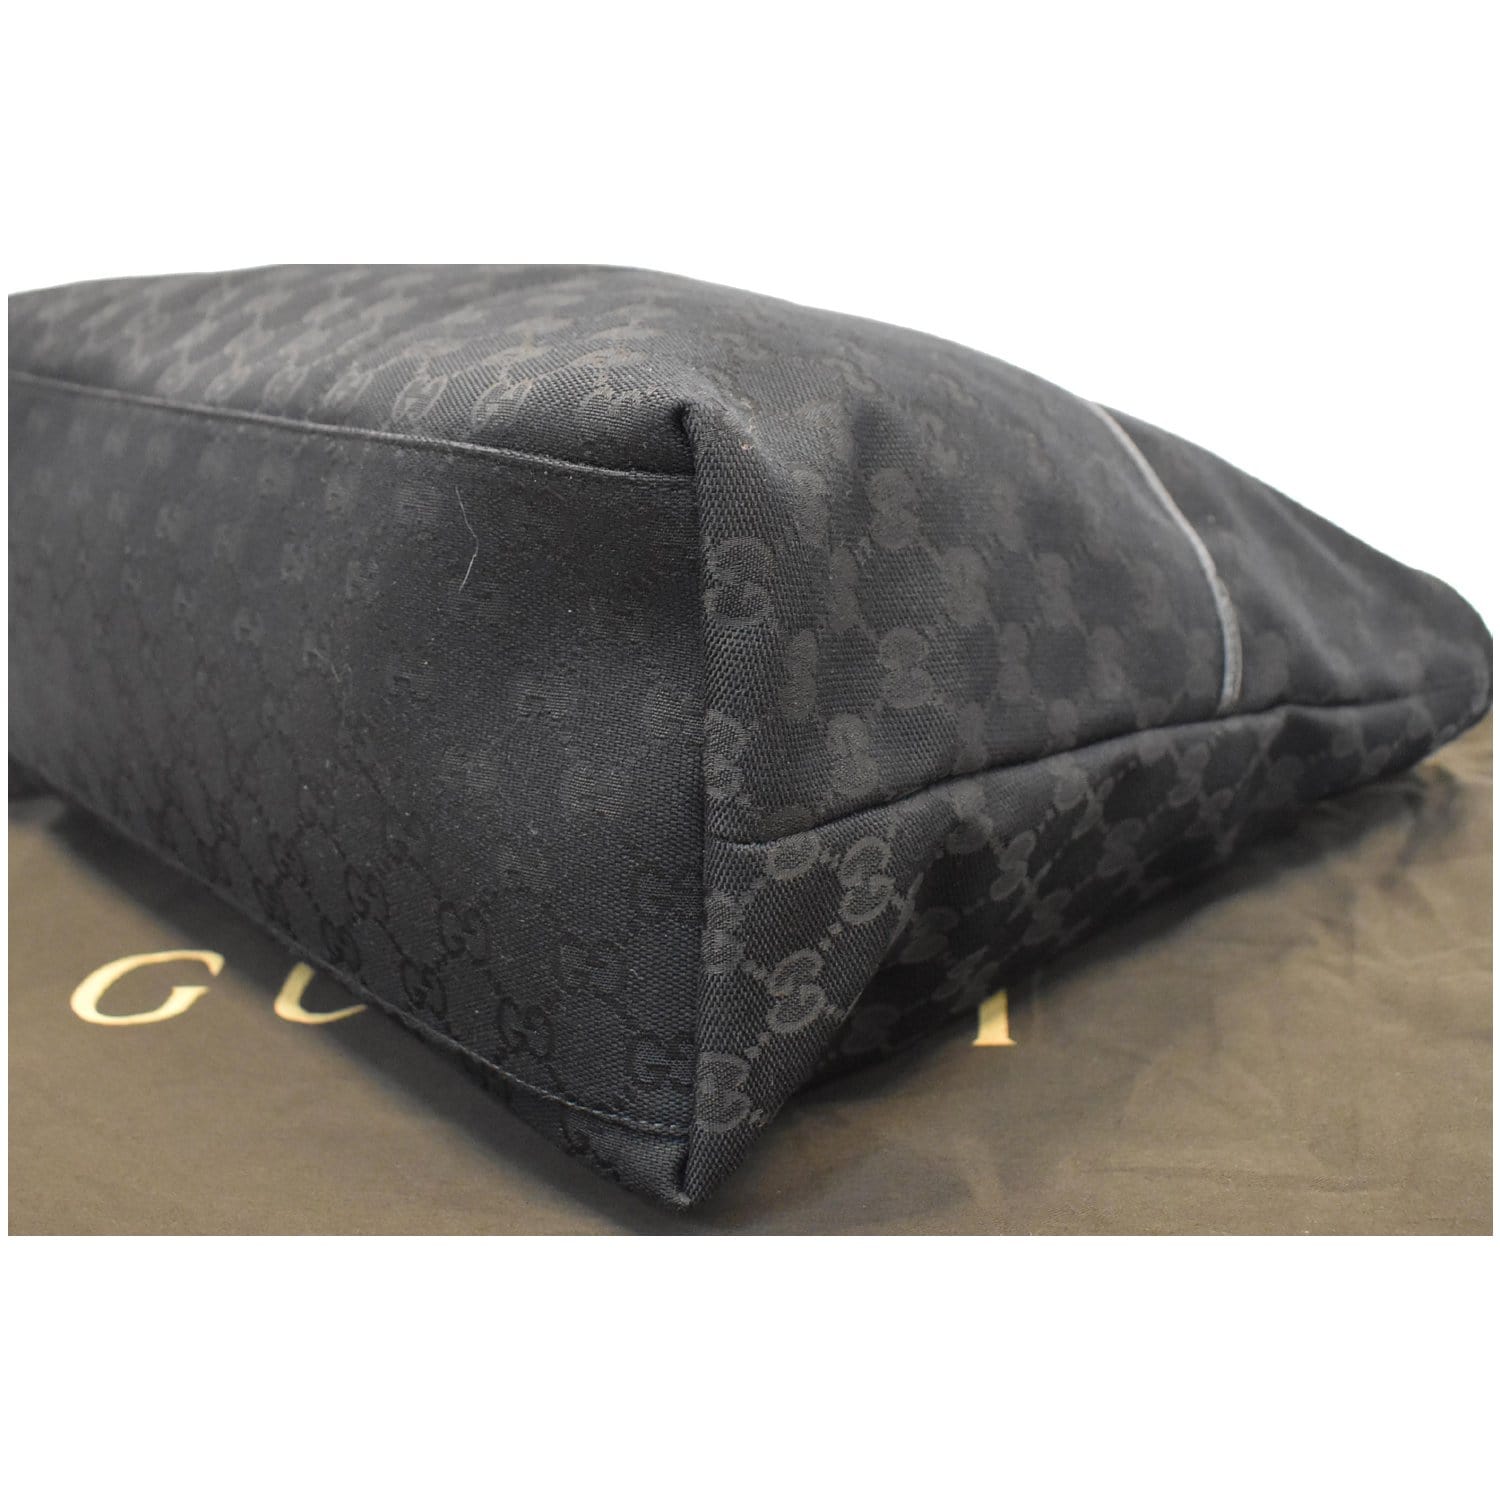 Gucci Black GG Monogram Canvas Shoulder Bag